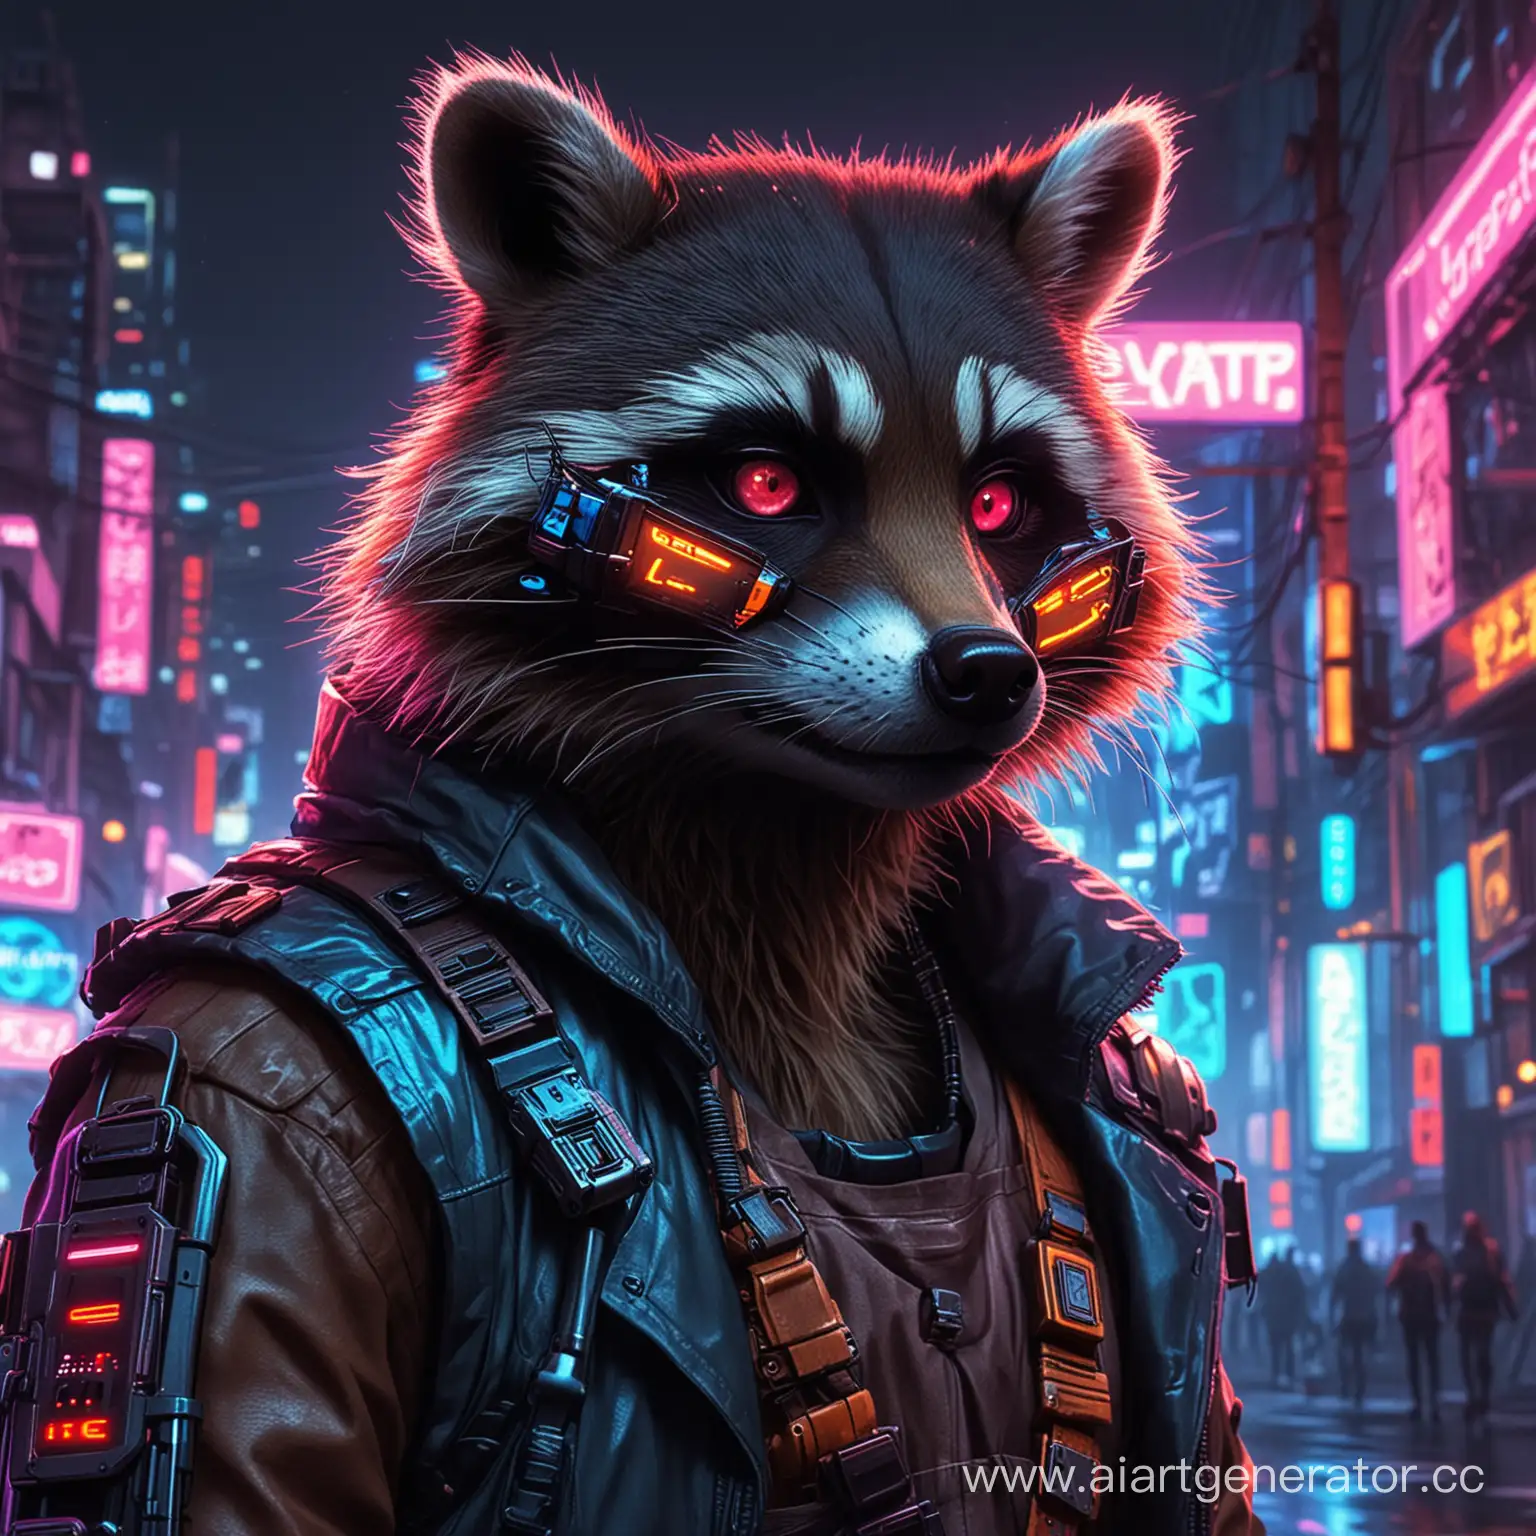 Cyberpunk-Raccoon-Avatar-in-NeonLit-Urban-Alley